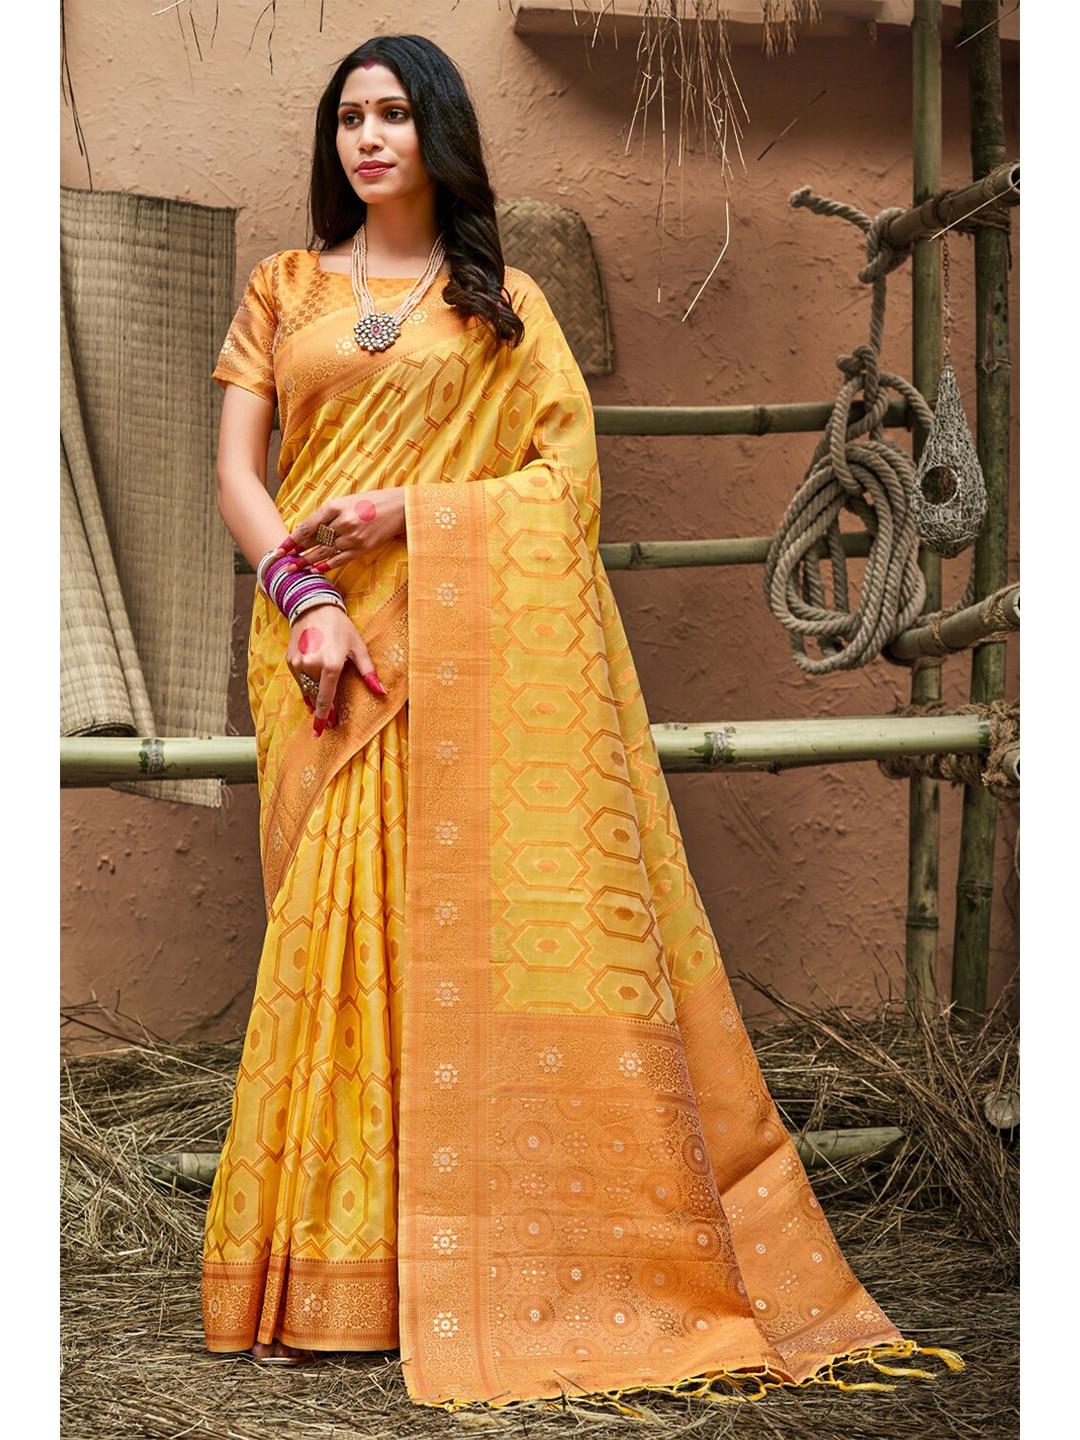 sangam prints yellow & gold-toned zari organza banarasi saree